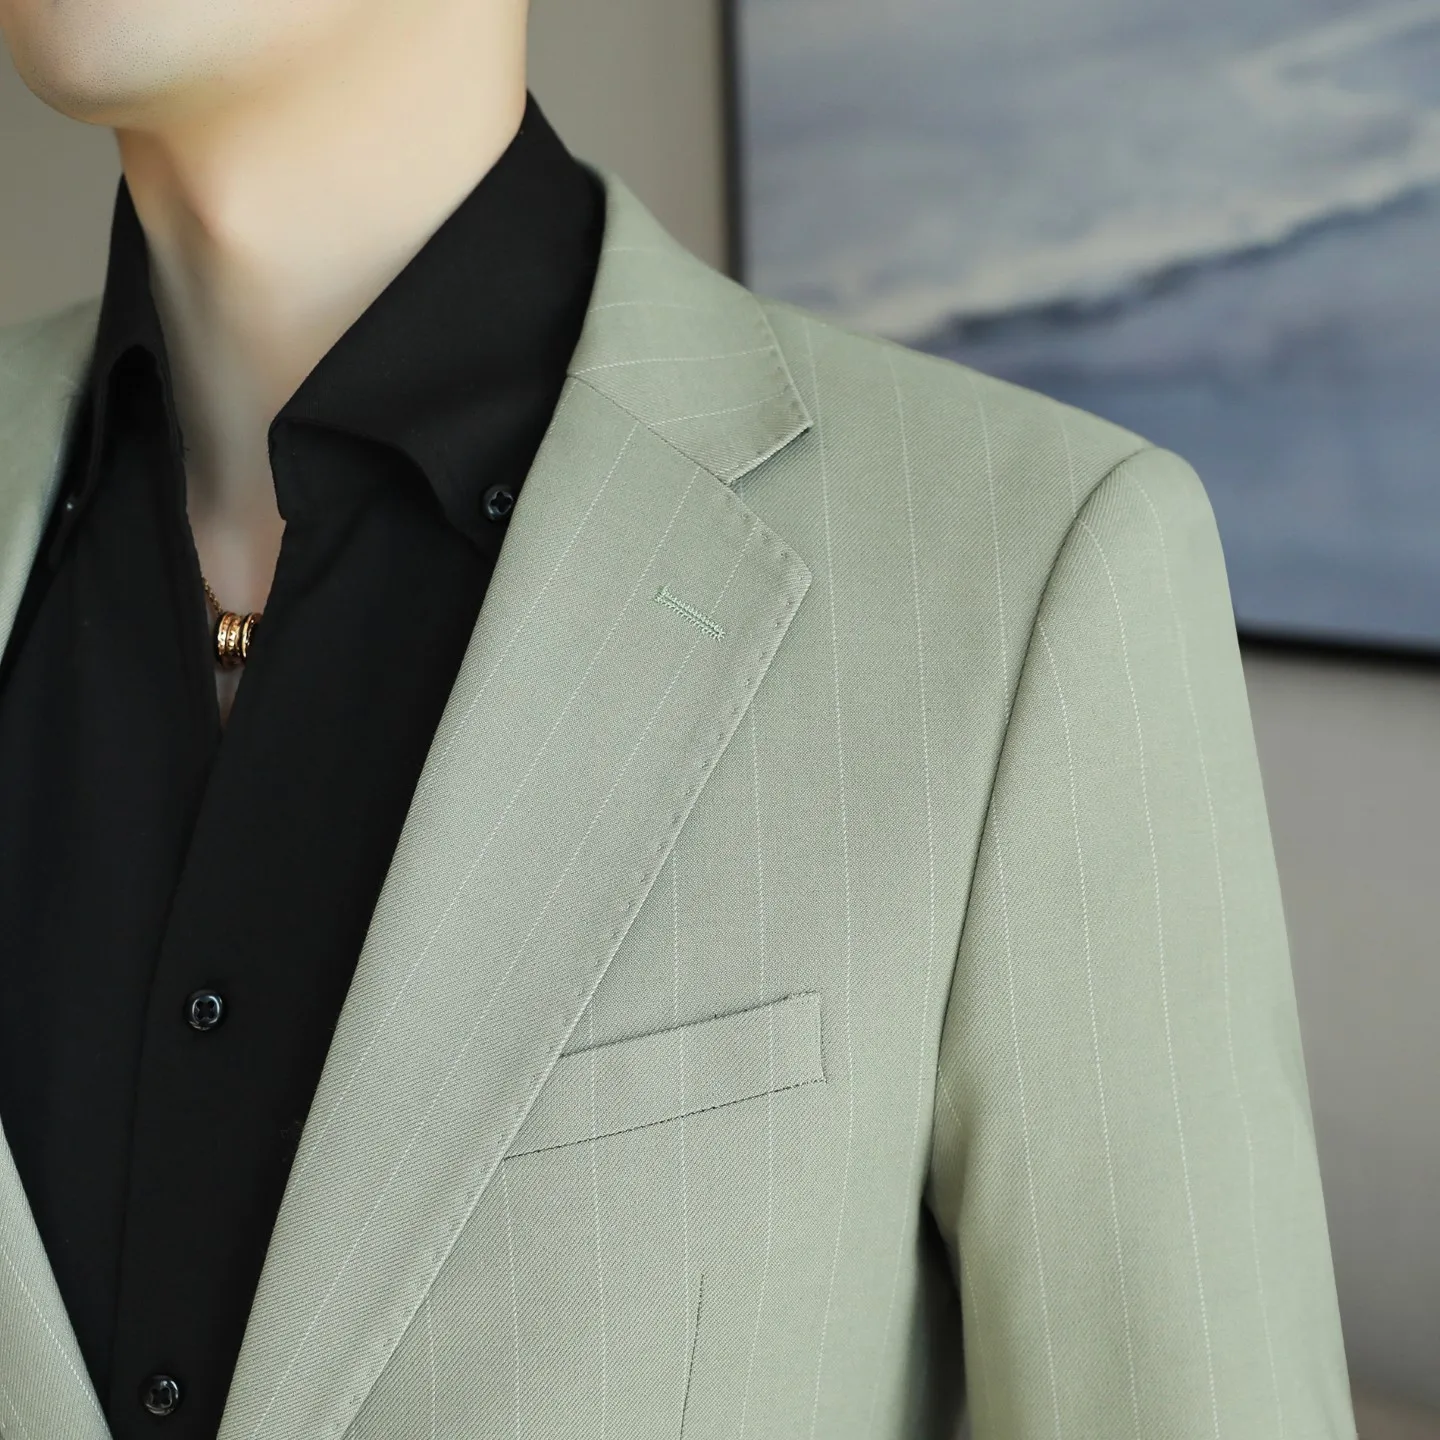 2023 Новый мужской модный костюм для отдыха на работе, улице и путешествий с приталенным однобортным пиджаком размеров S-5XL